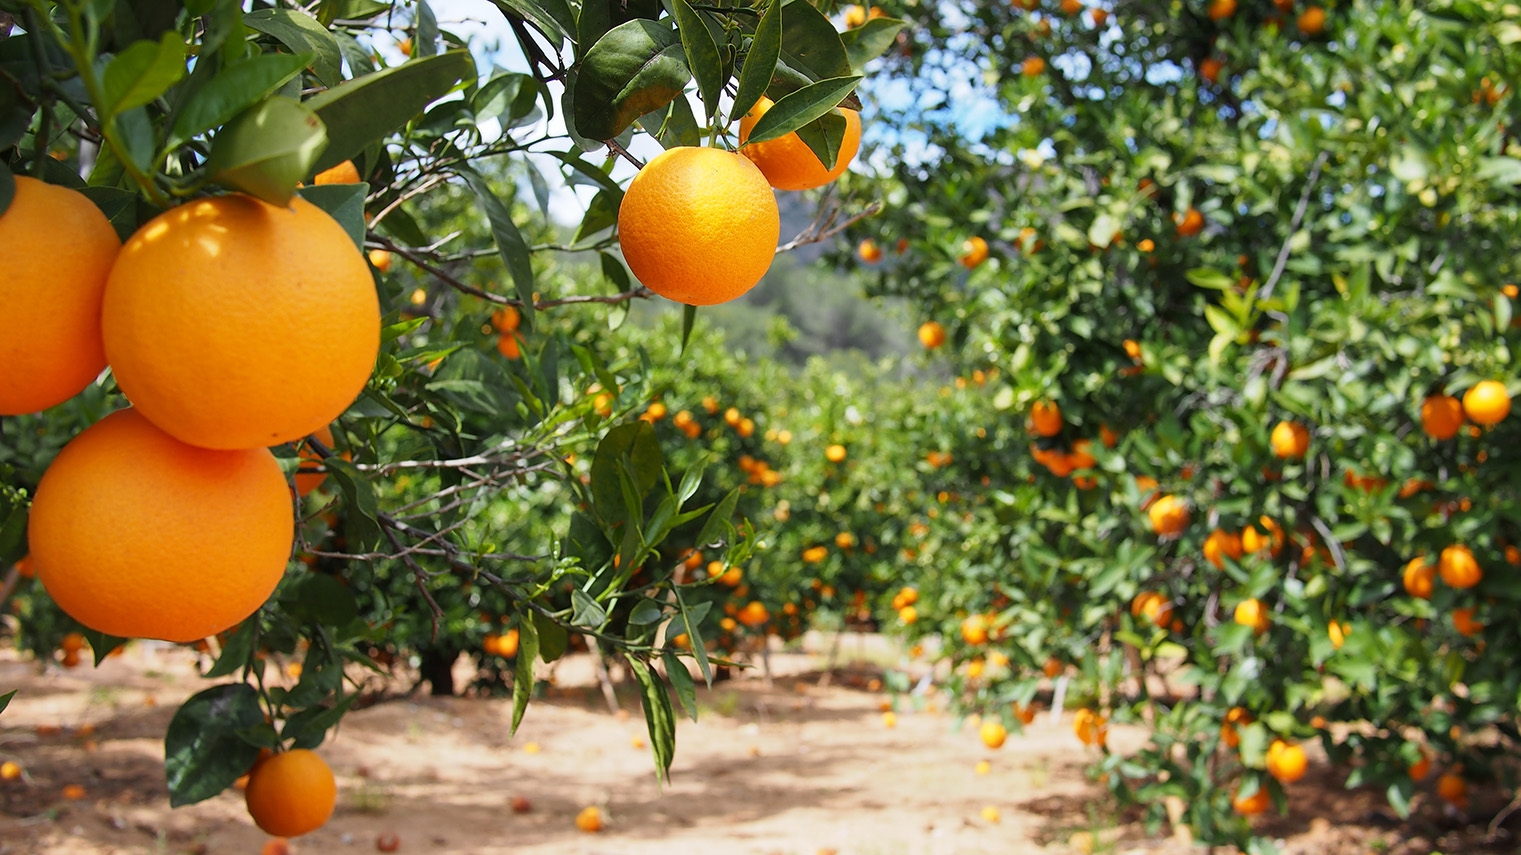 Fertilizing in Citrus